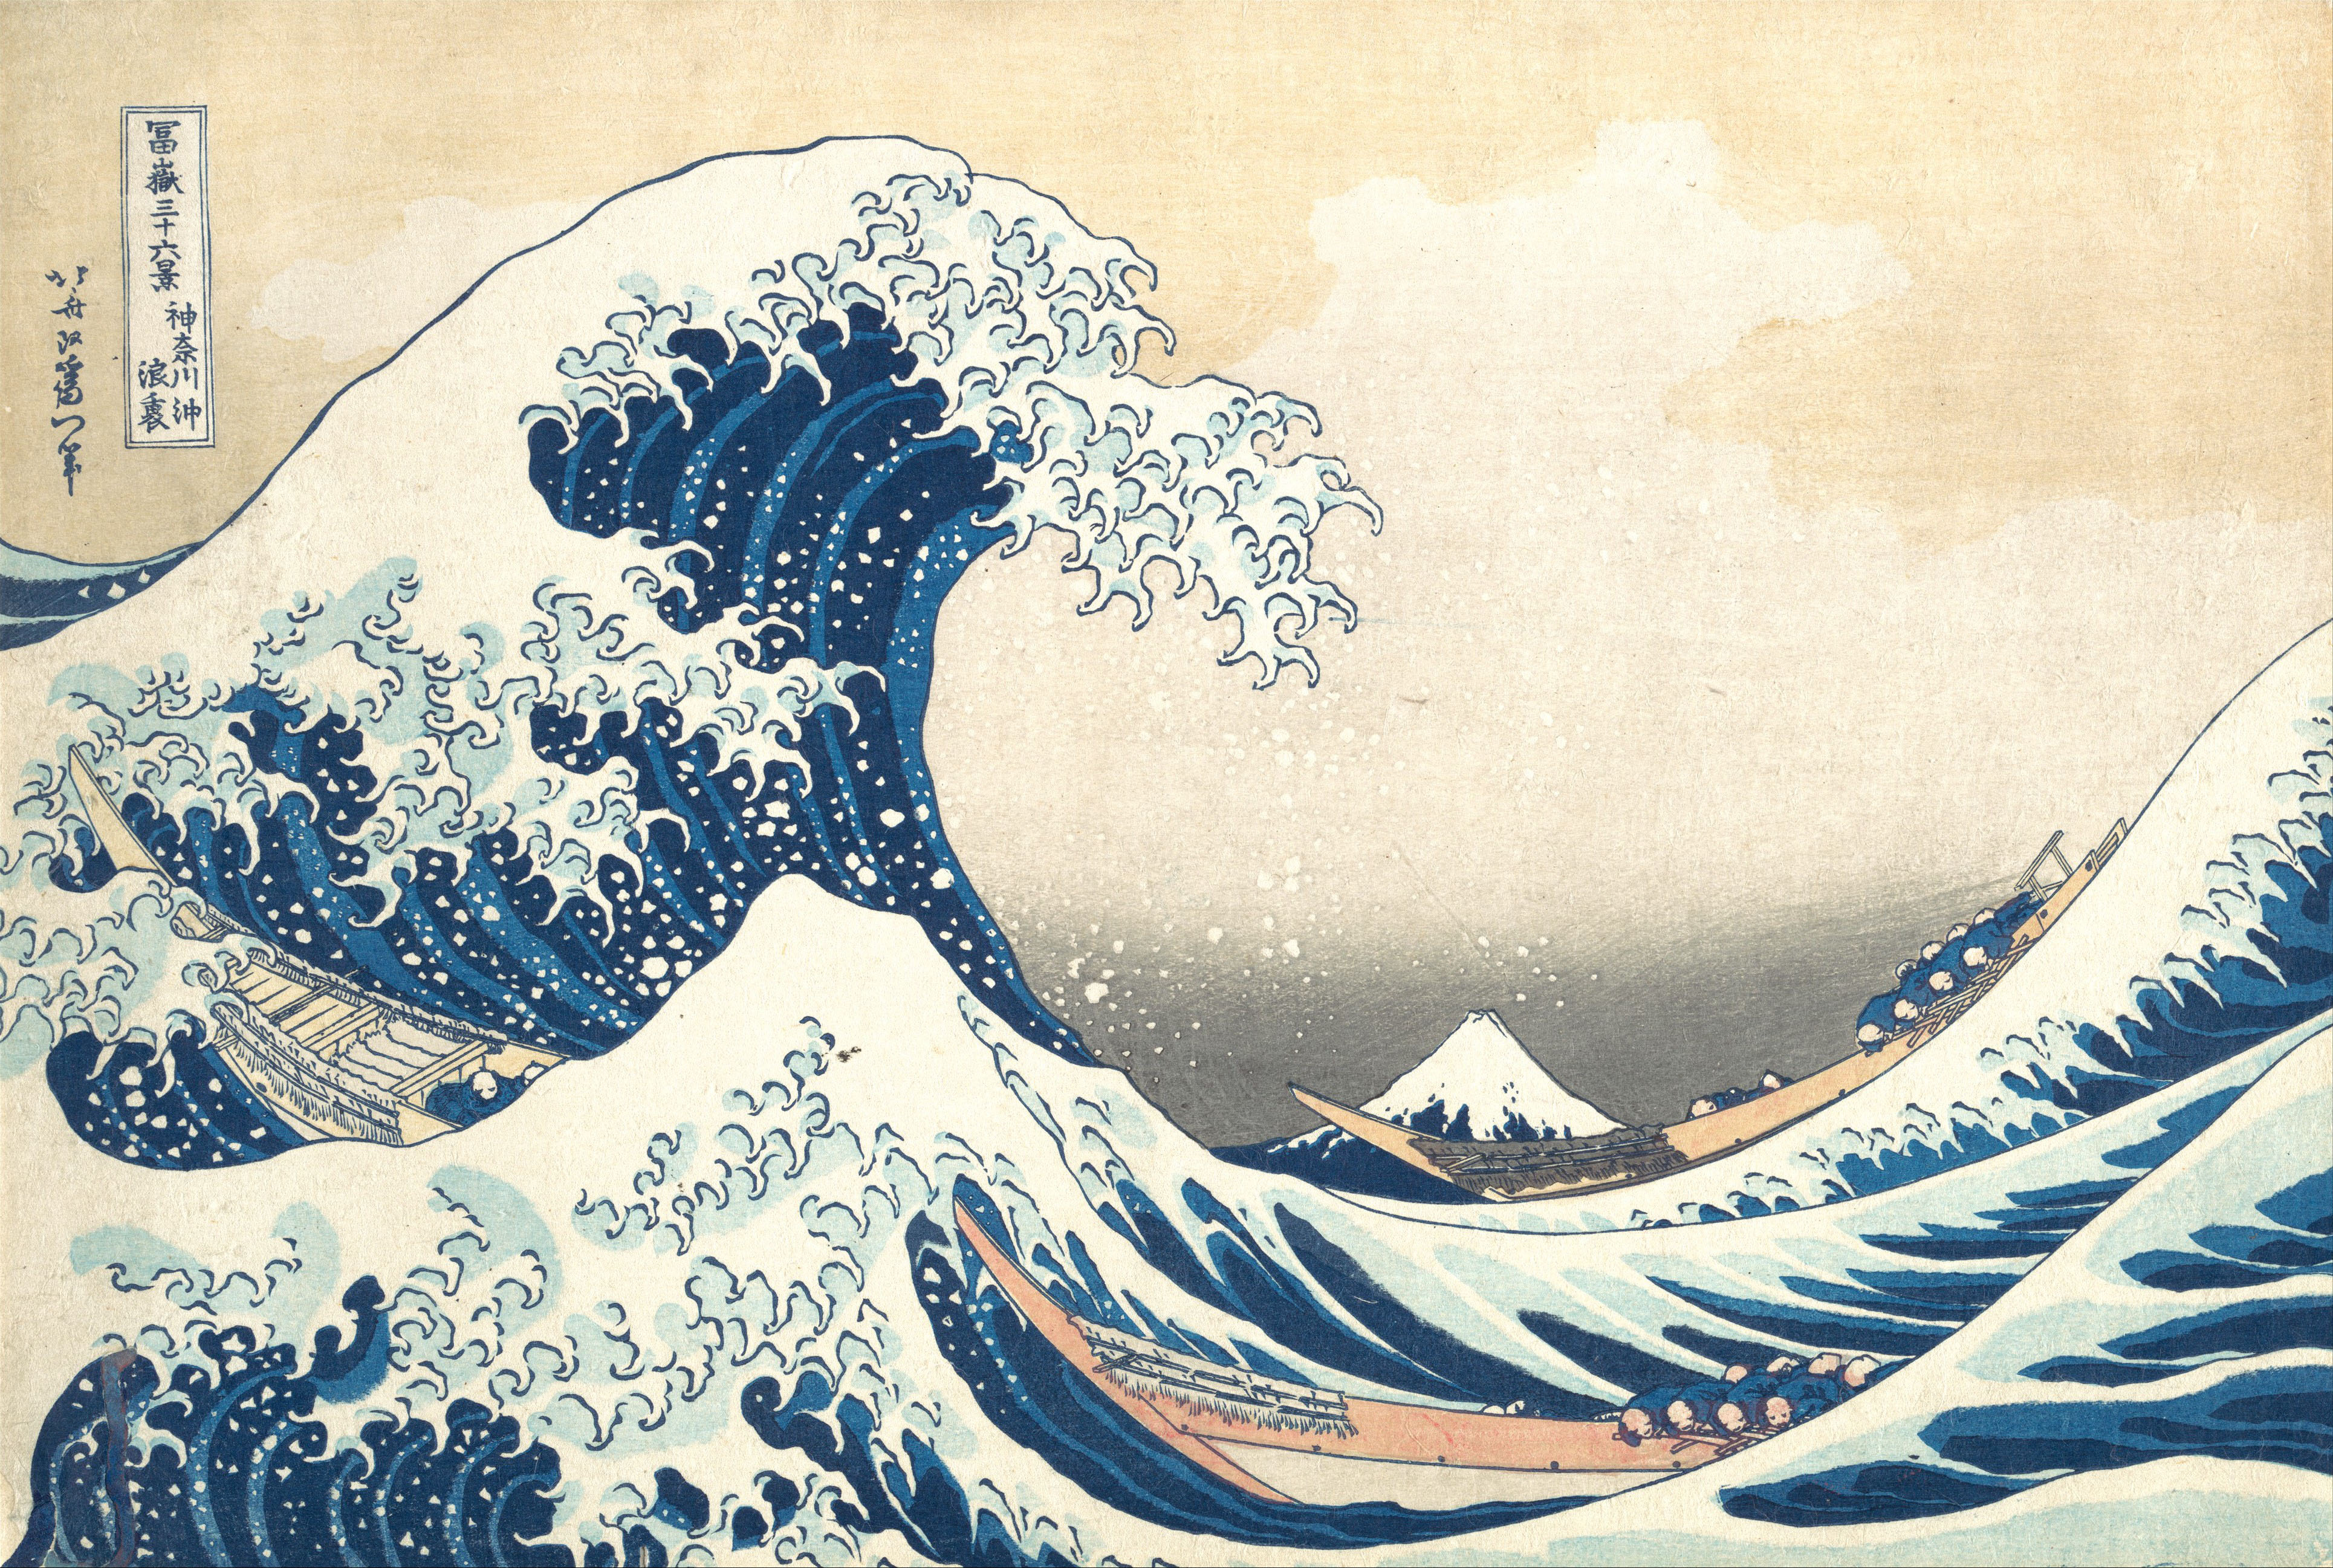 De grote golf van Kanagawa by Katsushika Hokusai - c. 1830 - - 